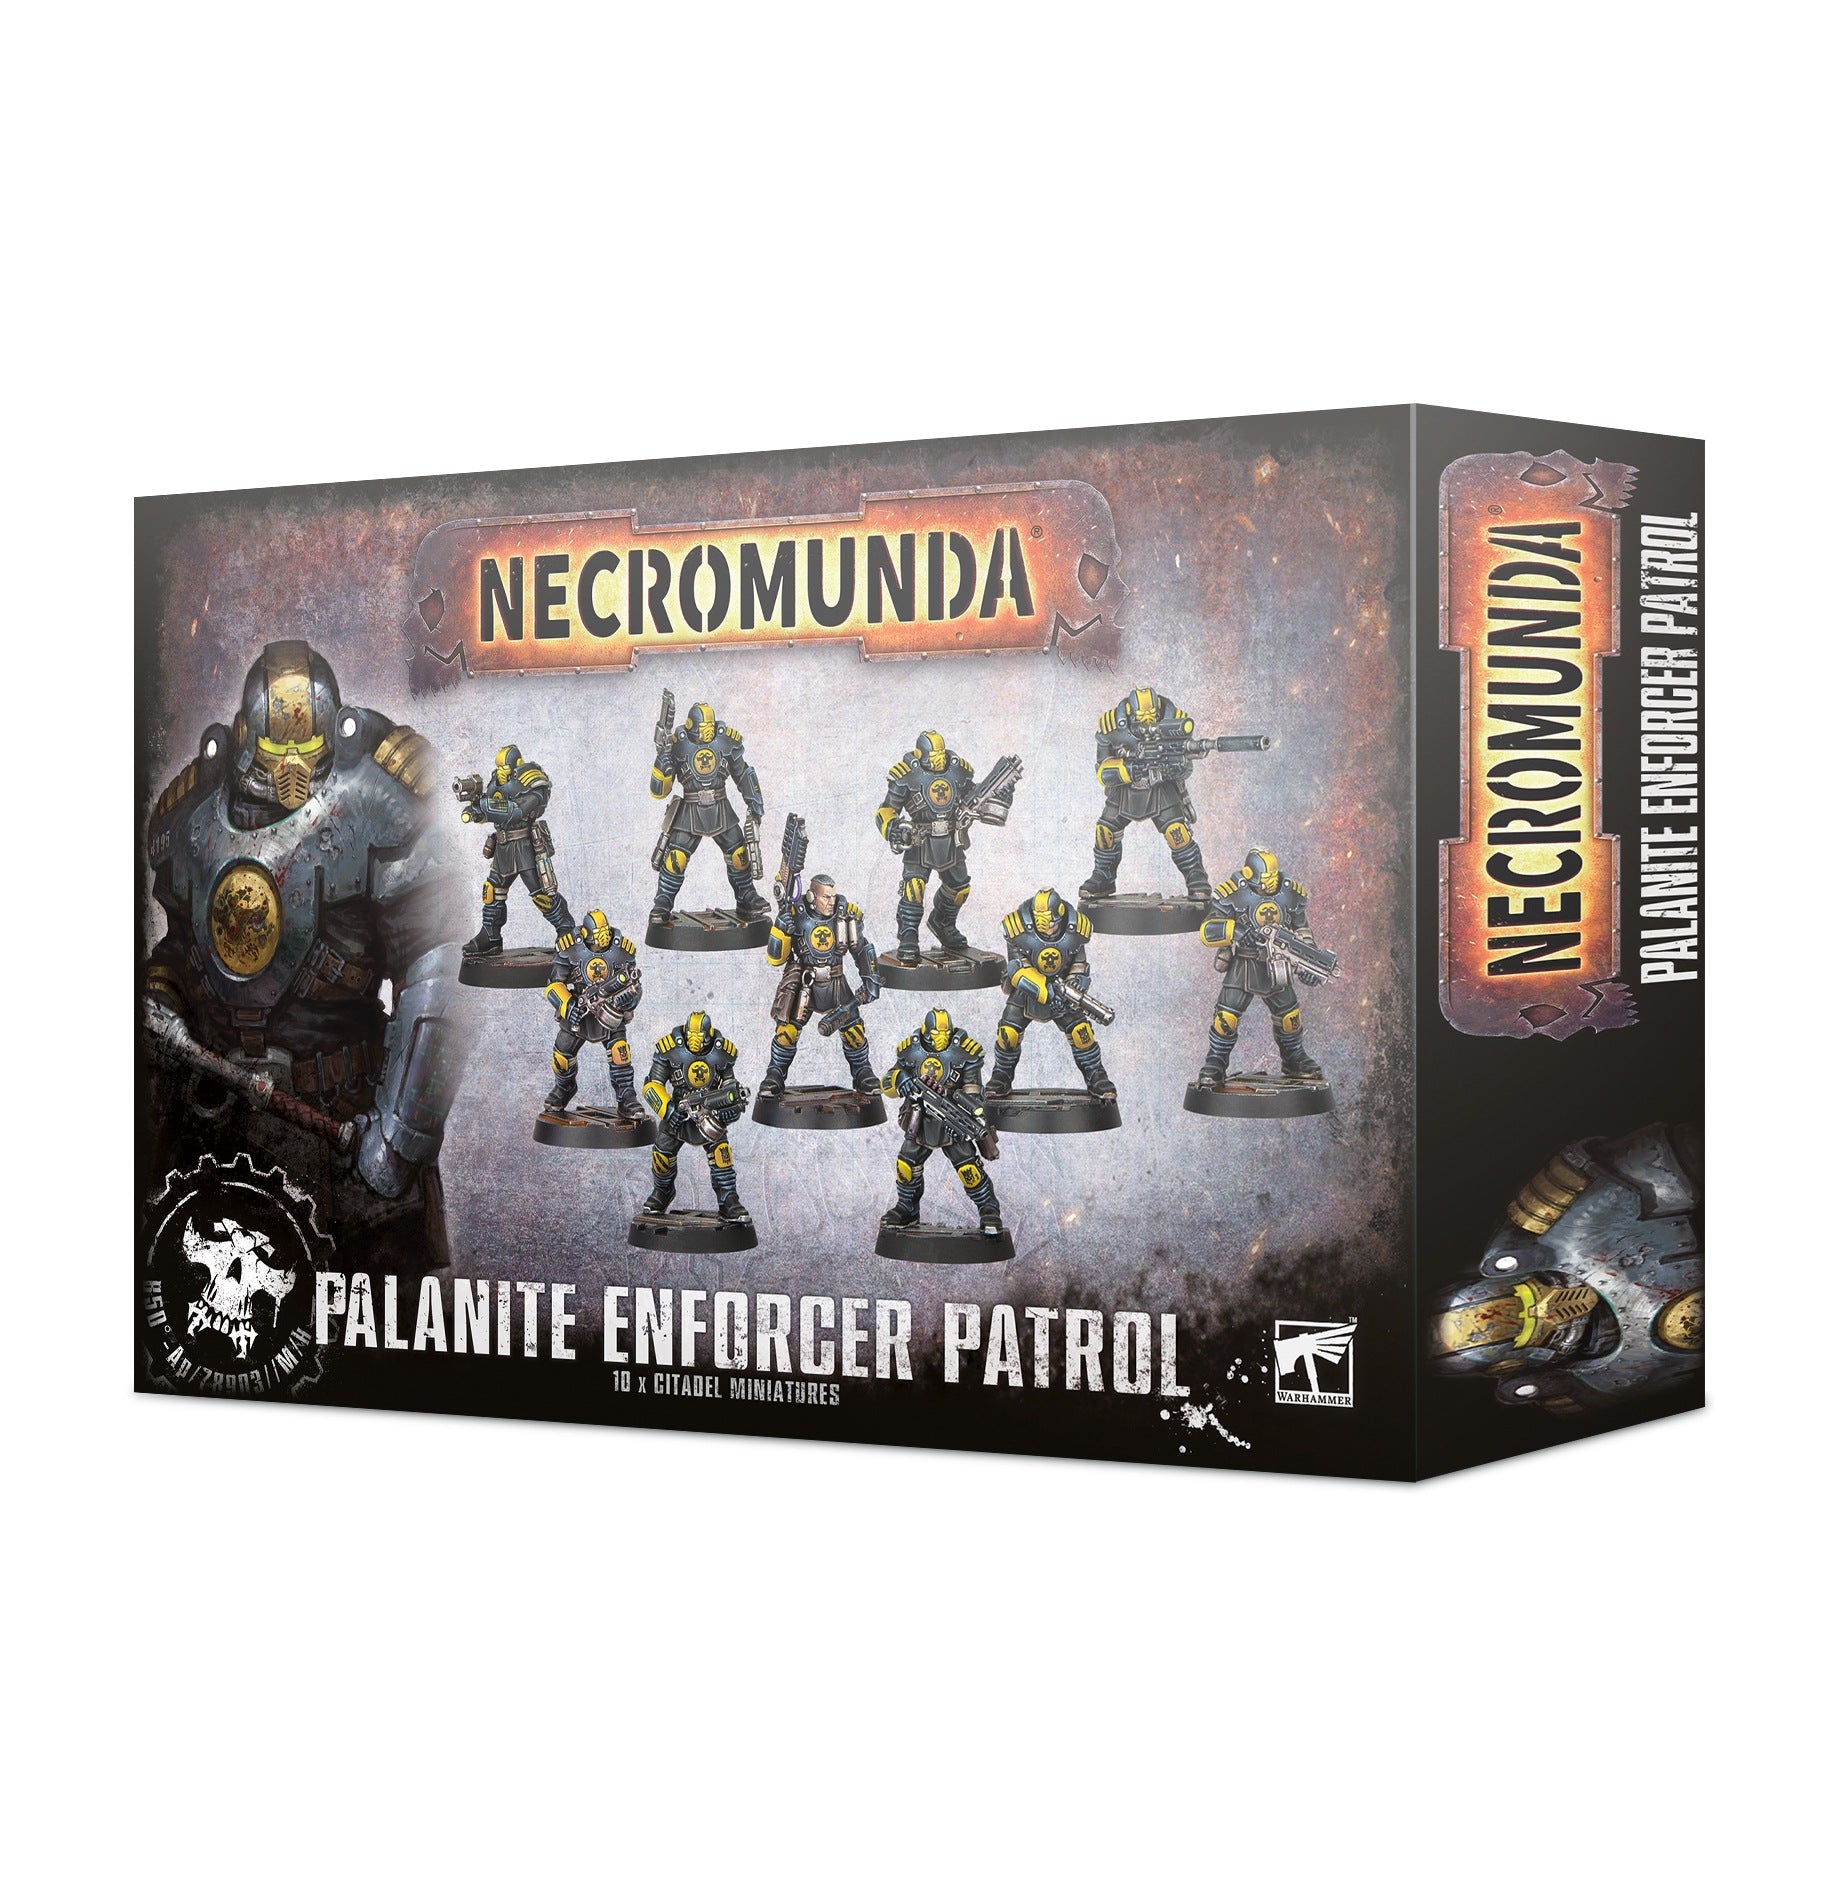 Palanite Enforcer Patrol Necromunda Games Workshop   